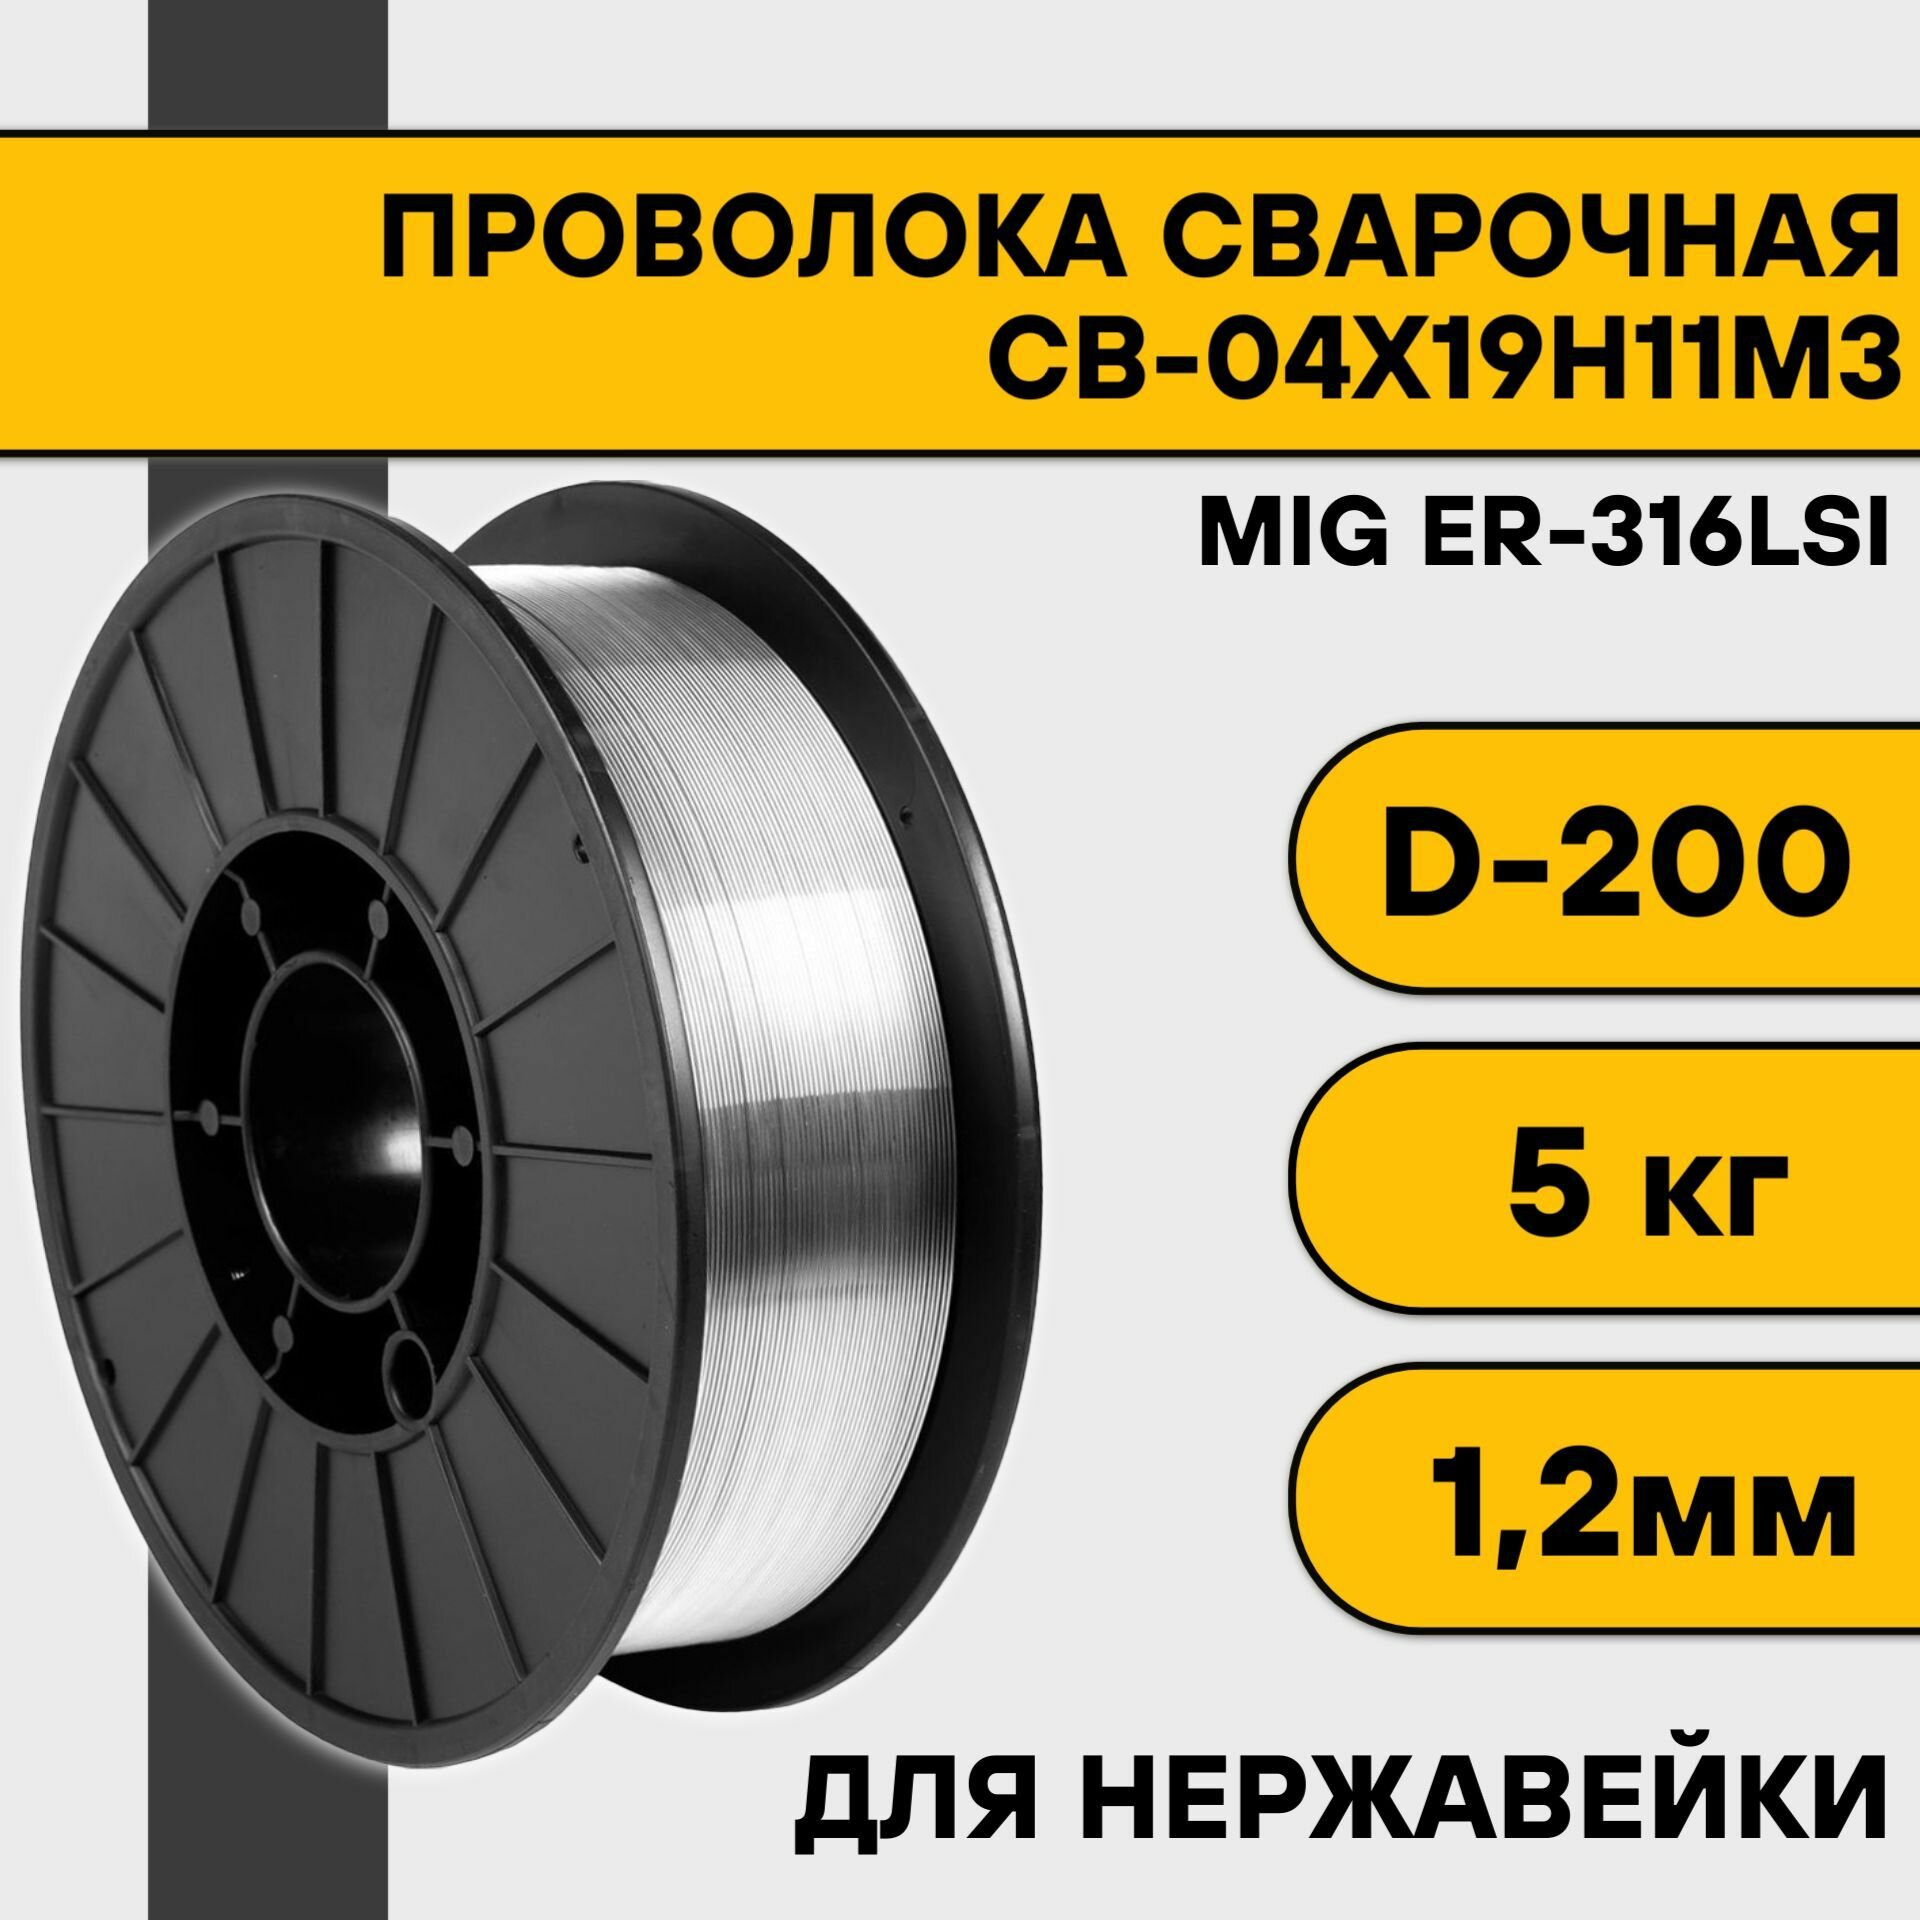 Сварочная проволока для нержавейки ER-316Lsi ф 1,2 мм (5 кг) D200